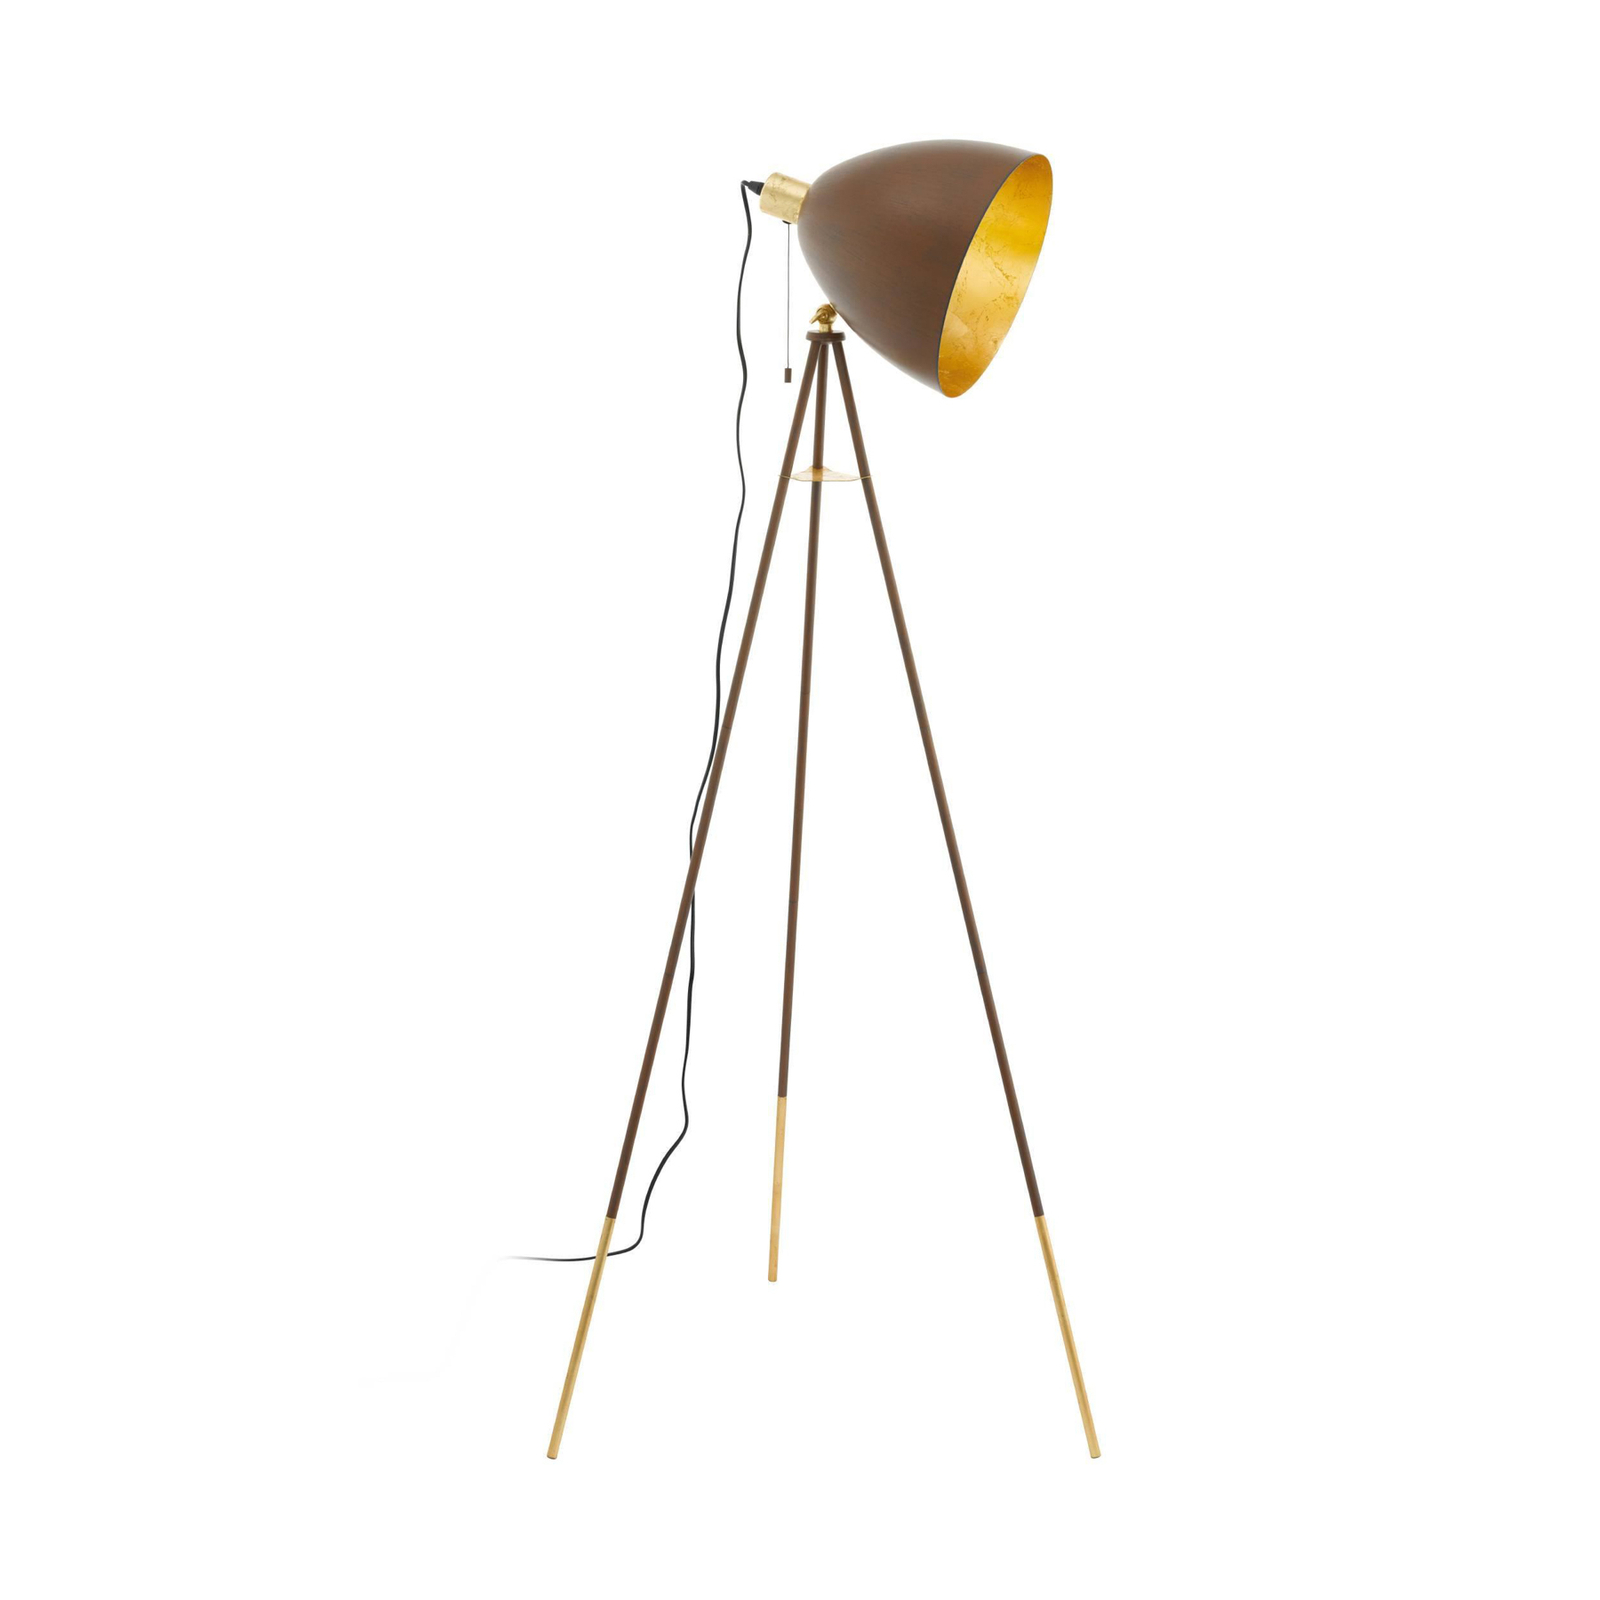 Stojací lampa Chester, výška 149 cm, barva rezavá/zlatá, ocel